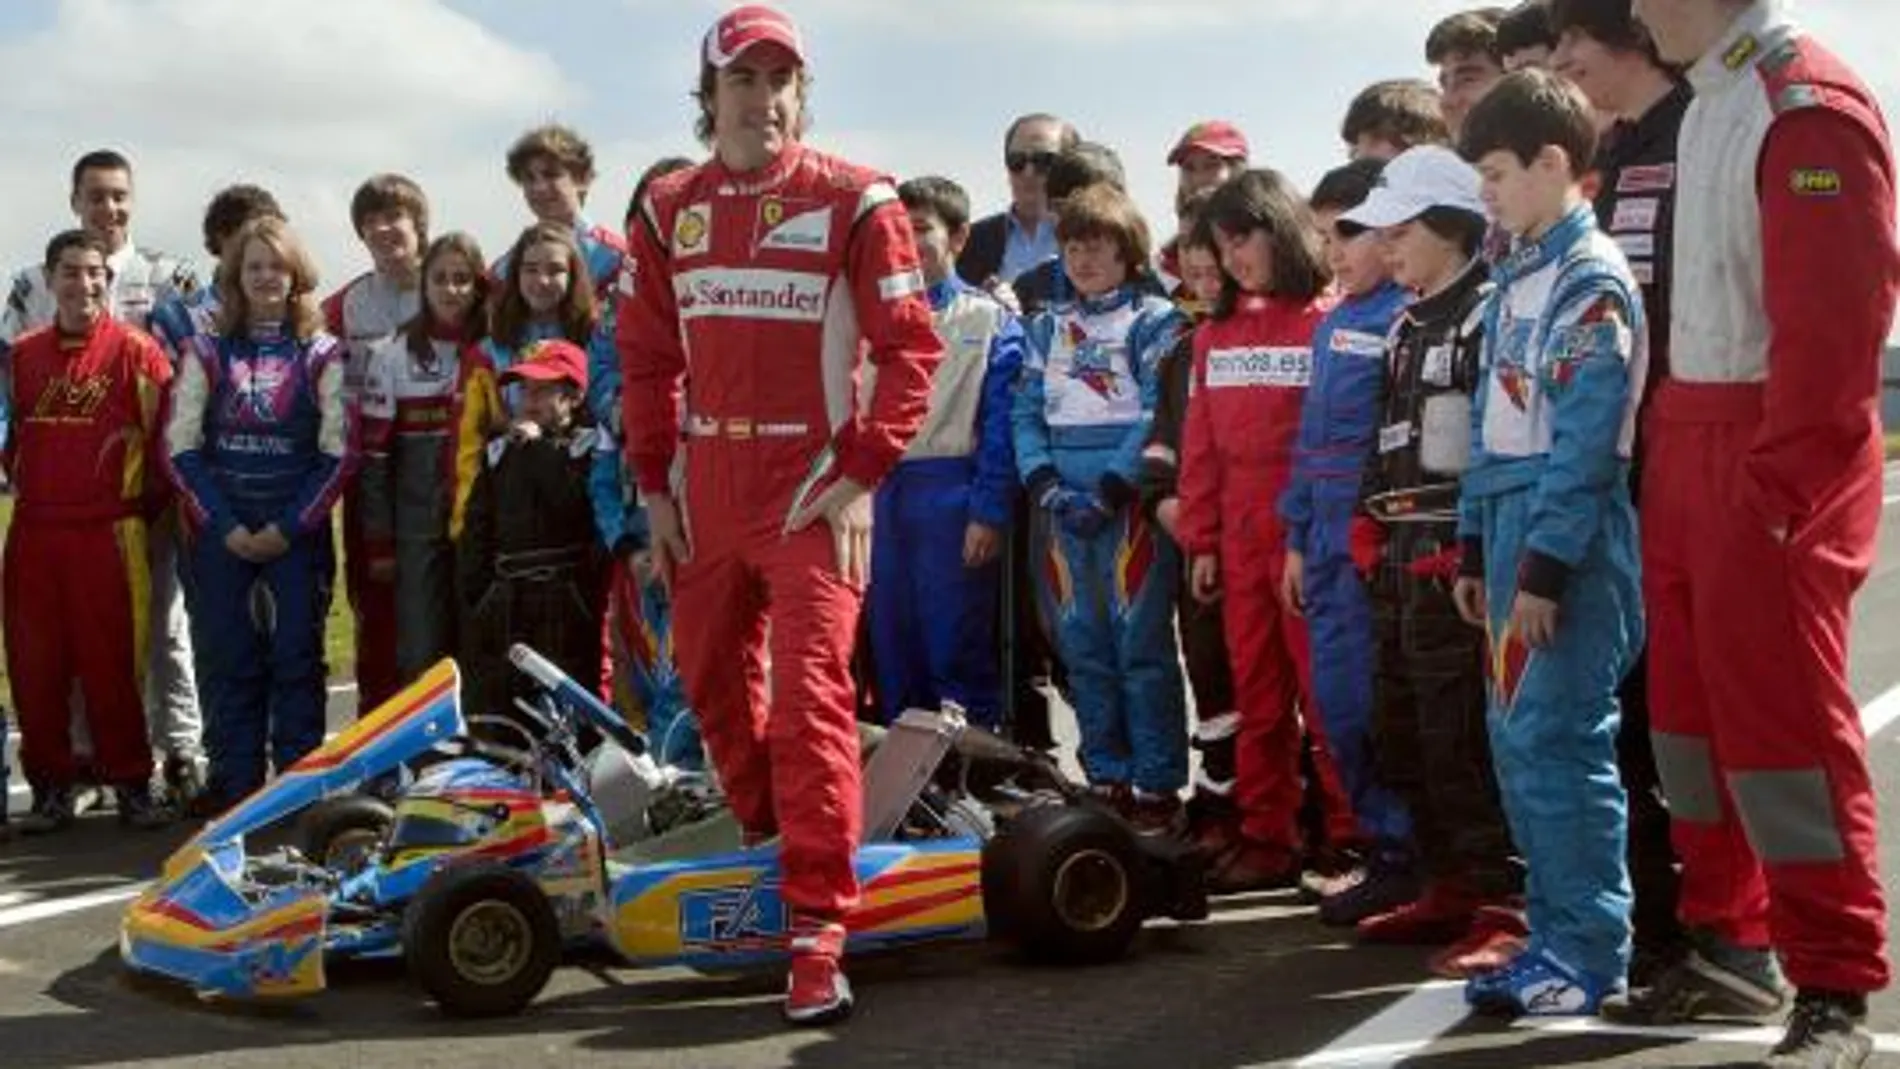 Fernando Alonso ha realizado hoy ante 4.000 personas la prueba de asfalto del circuito de karting del complejo deportivo que lleva su nombre, ubicado en La Morgal, en el concejo asturiano de LLanera.